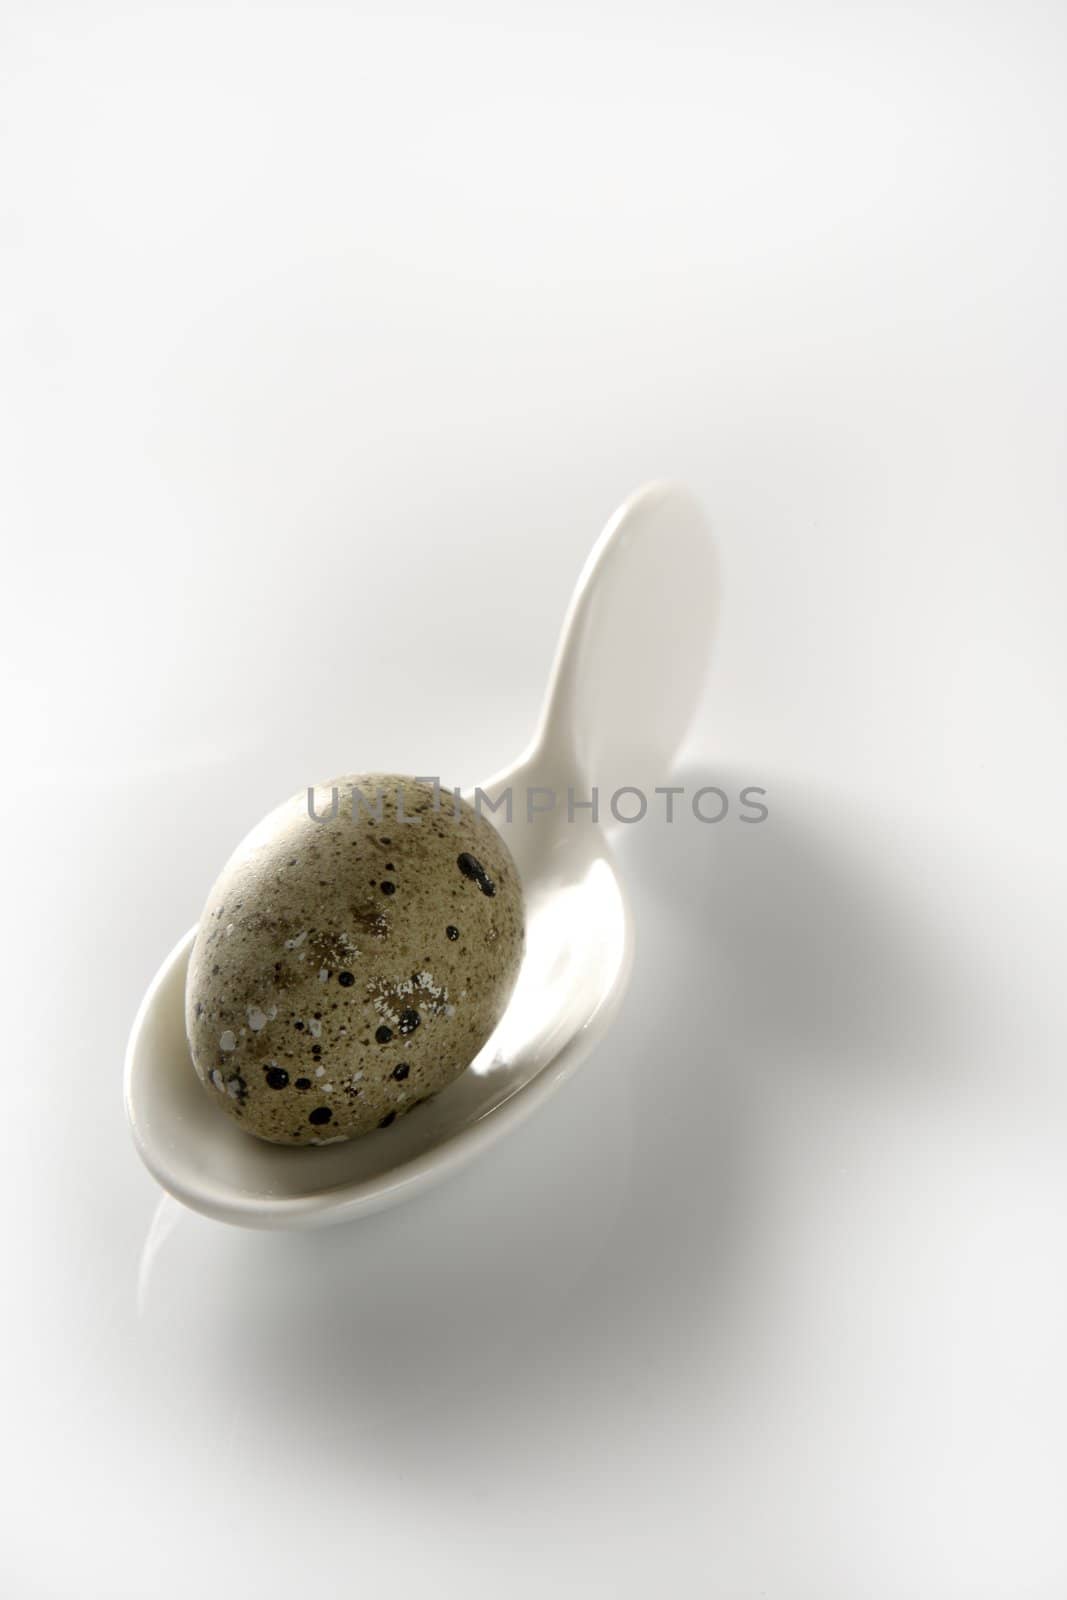 Quail egg in a ceramic white spoon by lunamarina